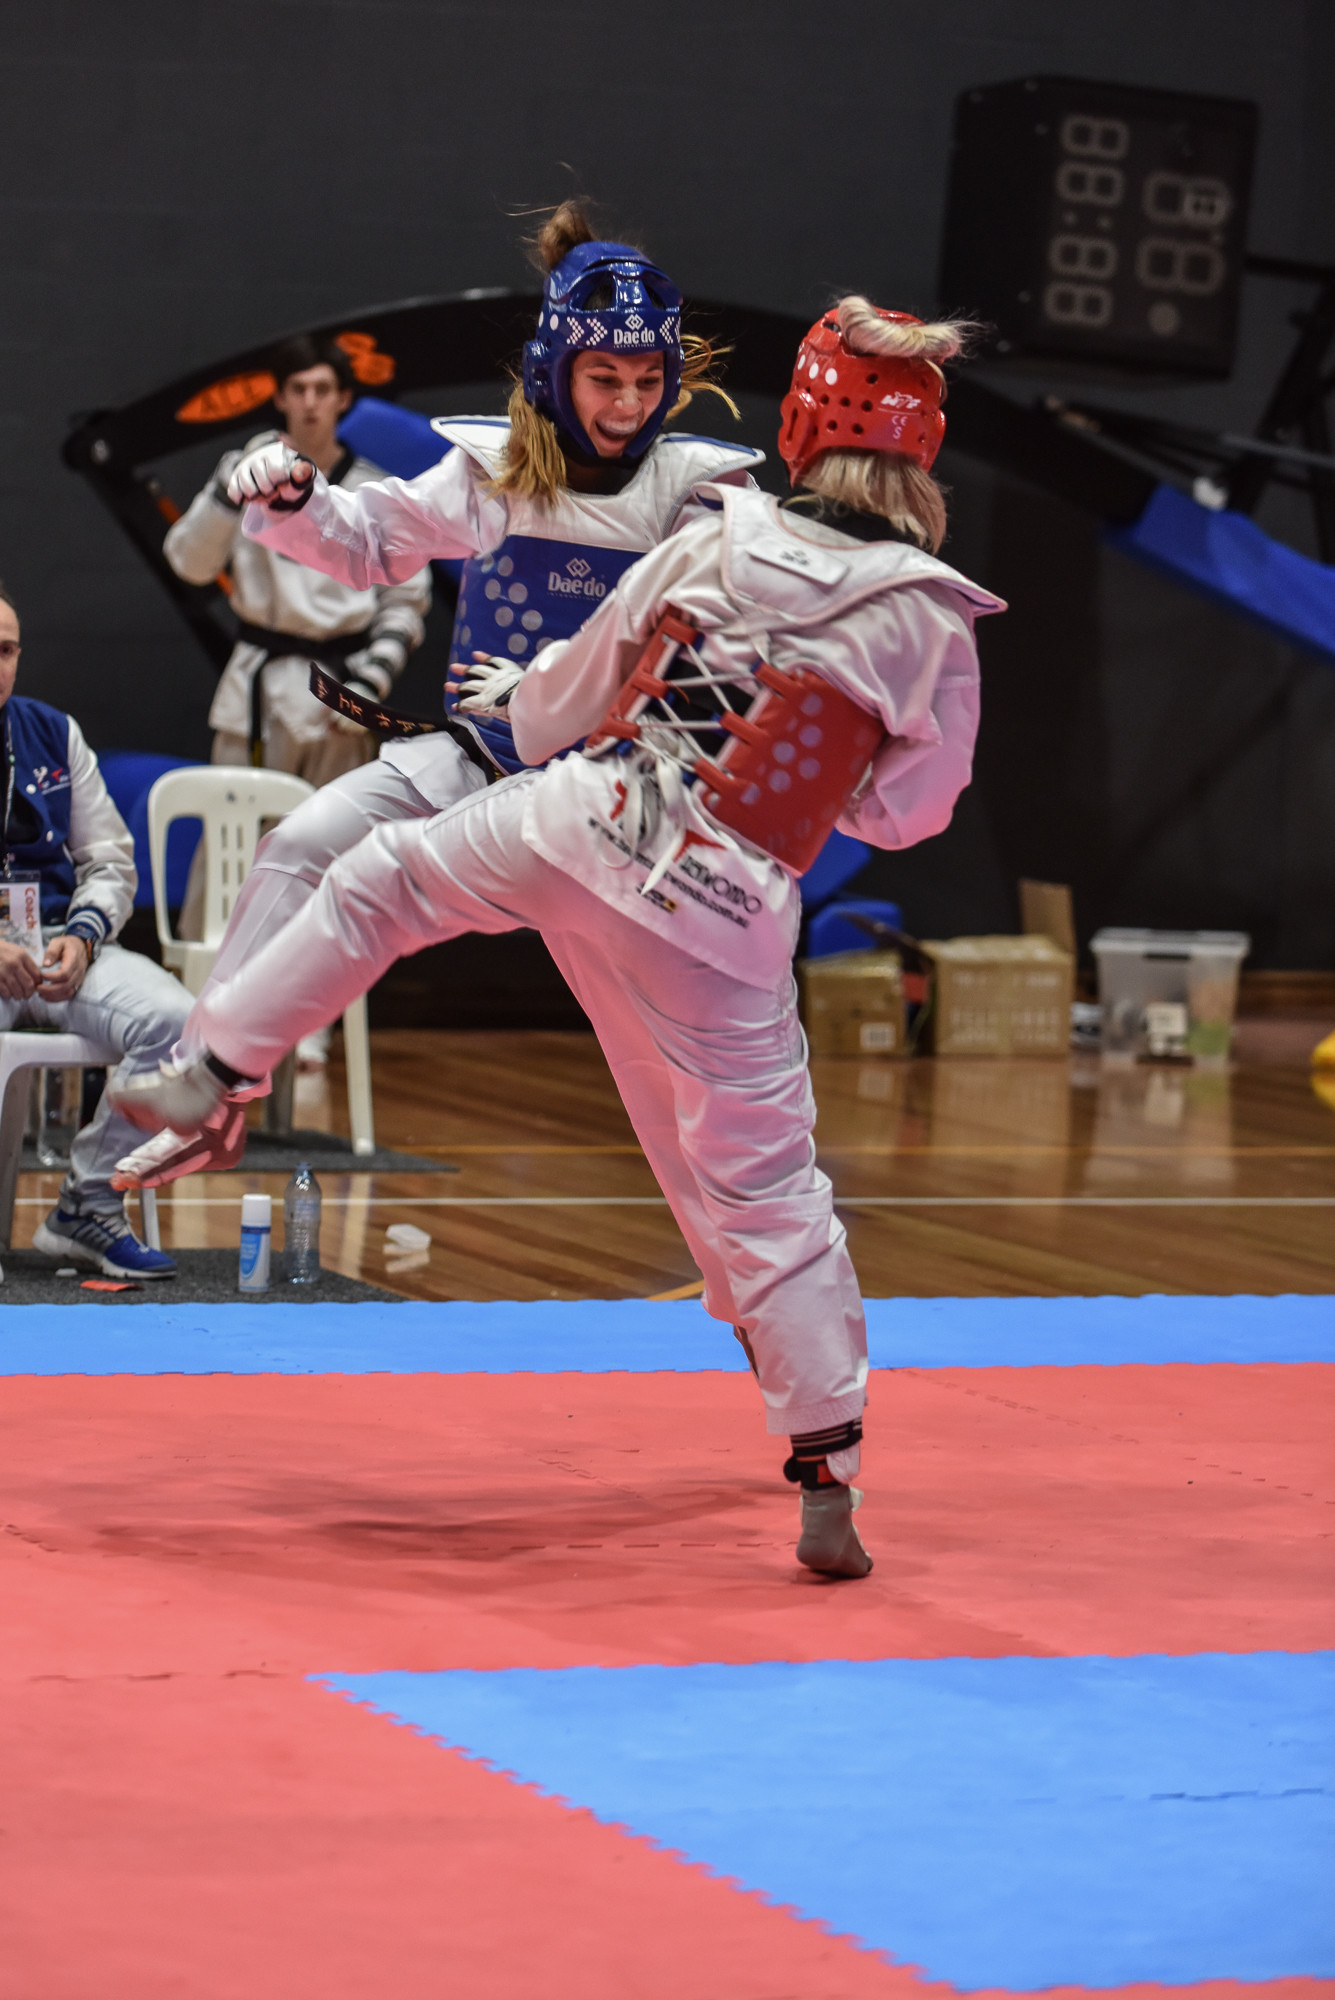 High-level Australian taekwondo and judo athletes will use the new training base ©CombatAUS